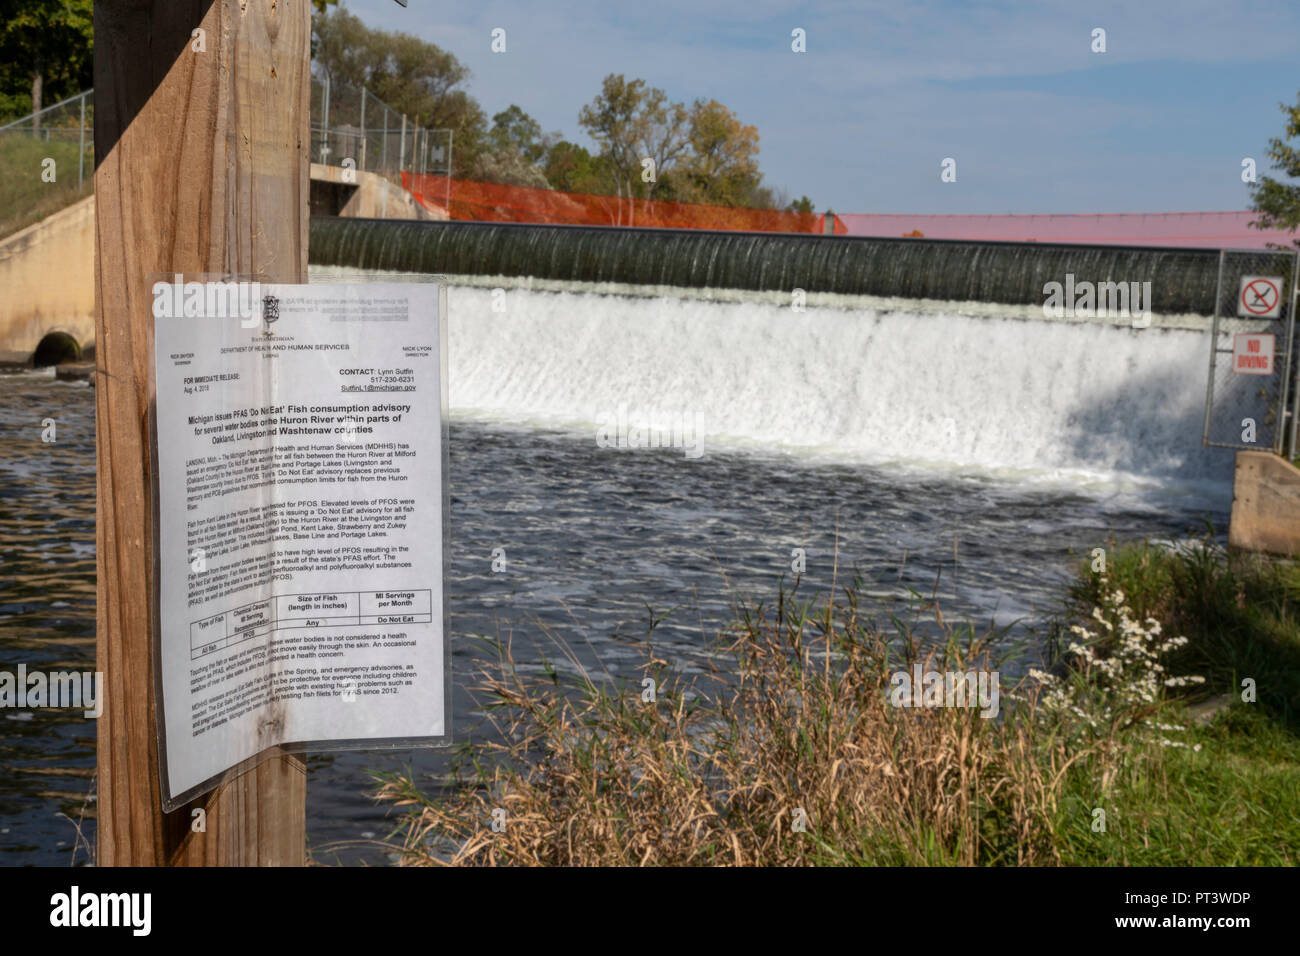 Brighton, Michigan - un segno al di sotto di una diga sul fiume Huron avverte i pescatori di non mangiare il fiume di pesce. Livelli elevati di PFAS prodotti chimici sono stati trovati in Foto Stock